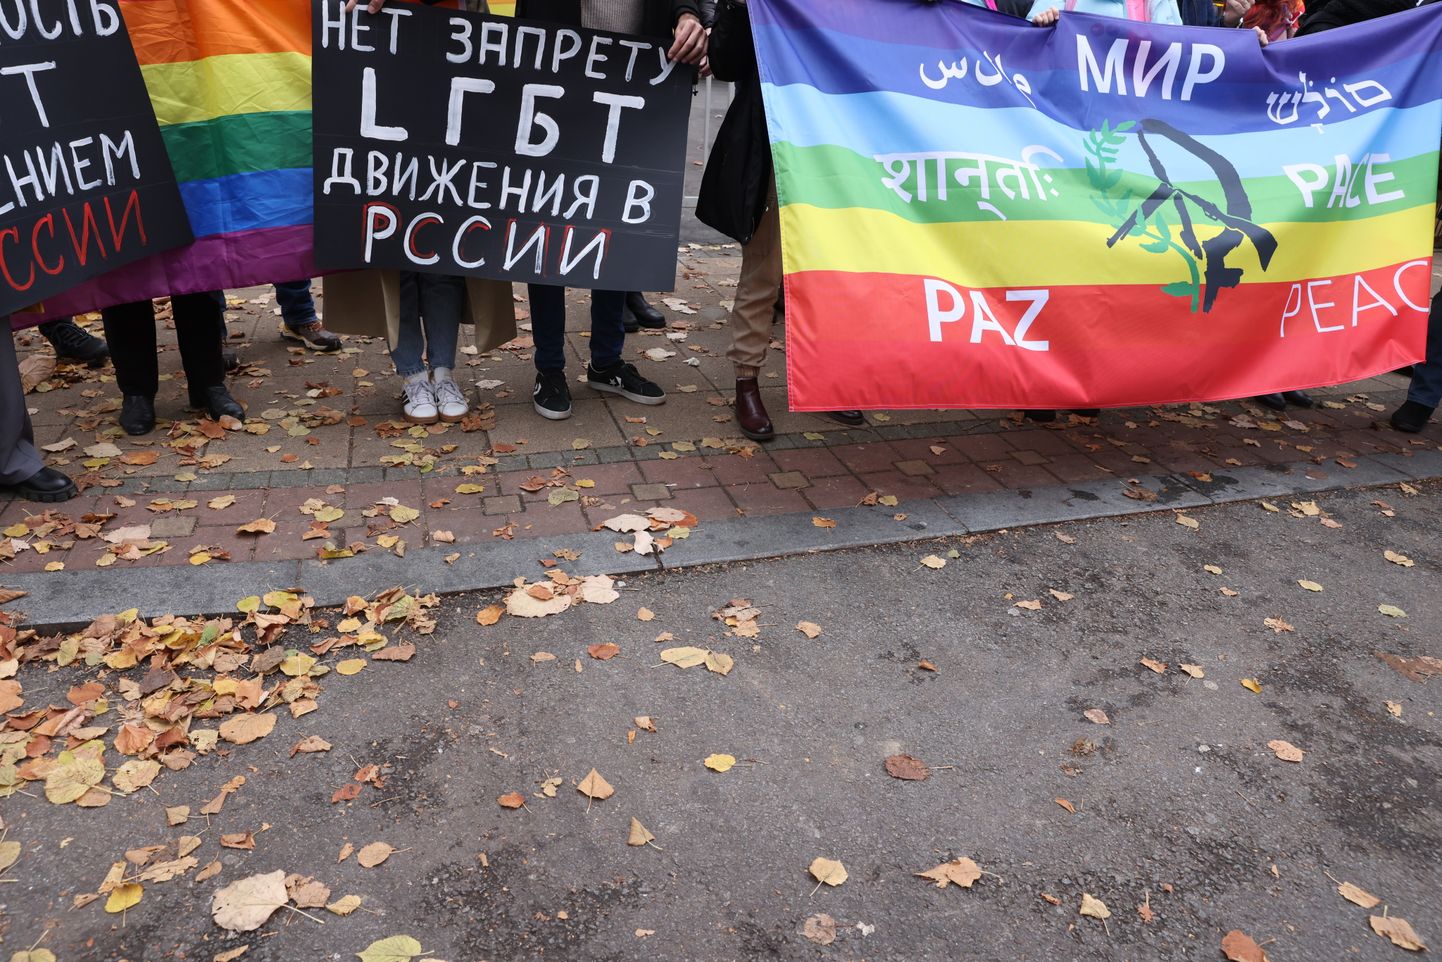 LGBT tiesību aktīvisti protestā Belgradā.